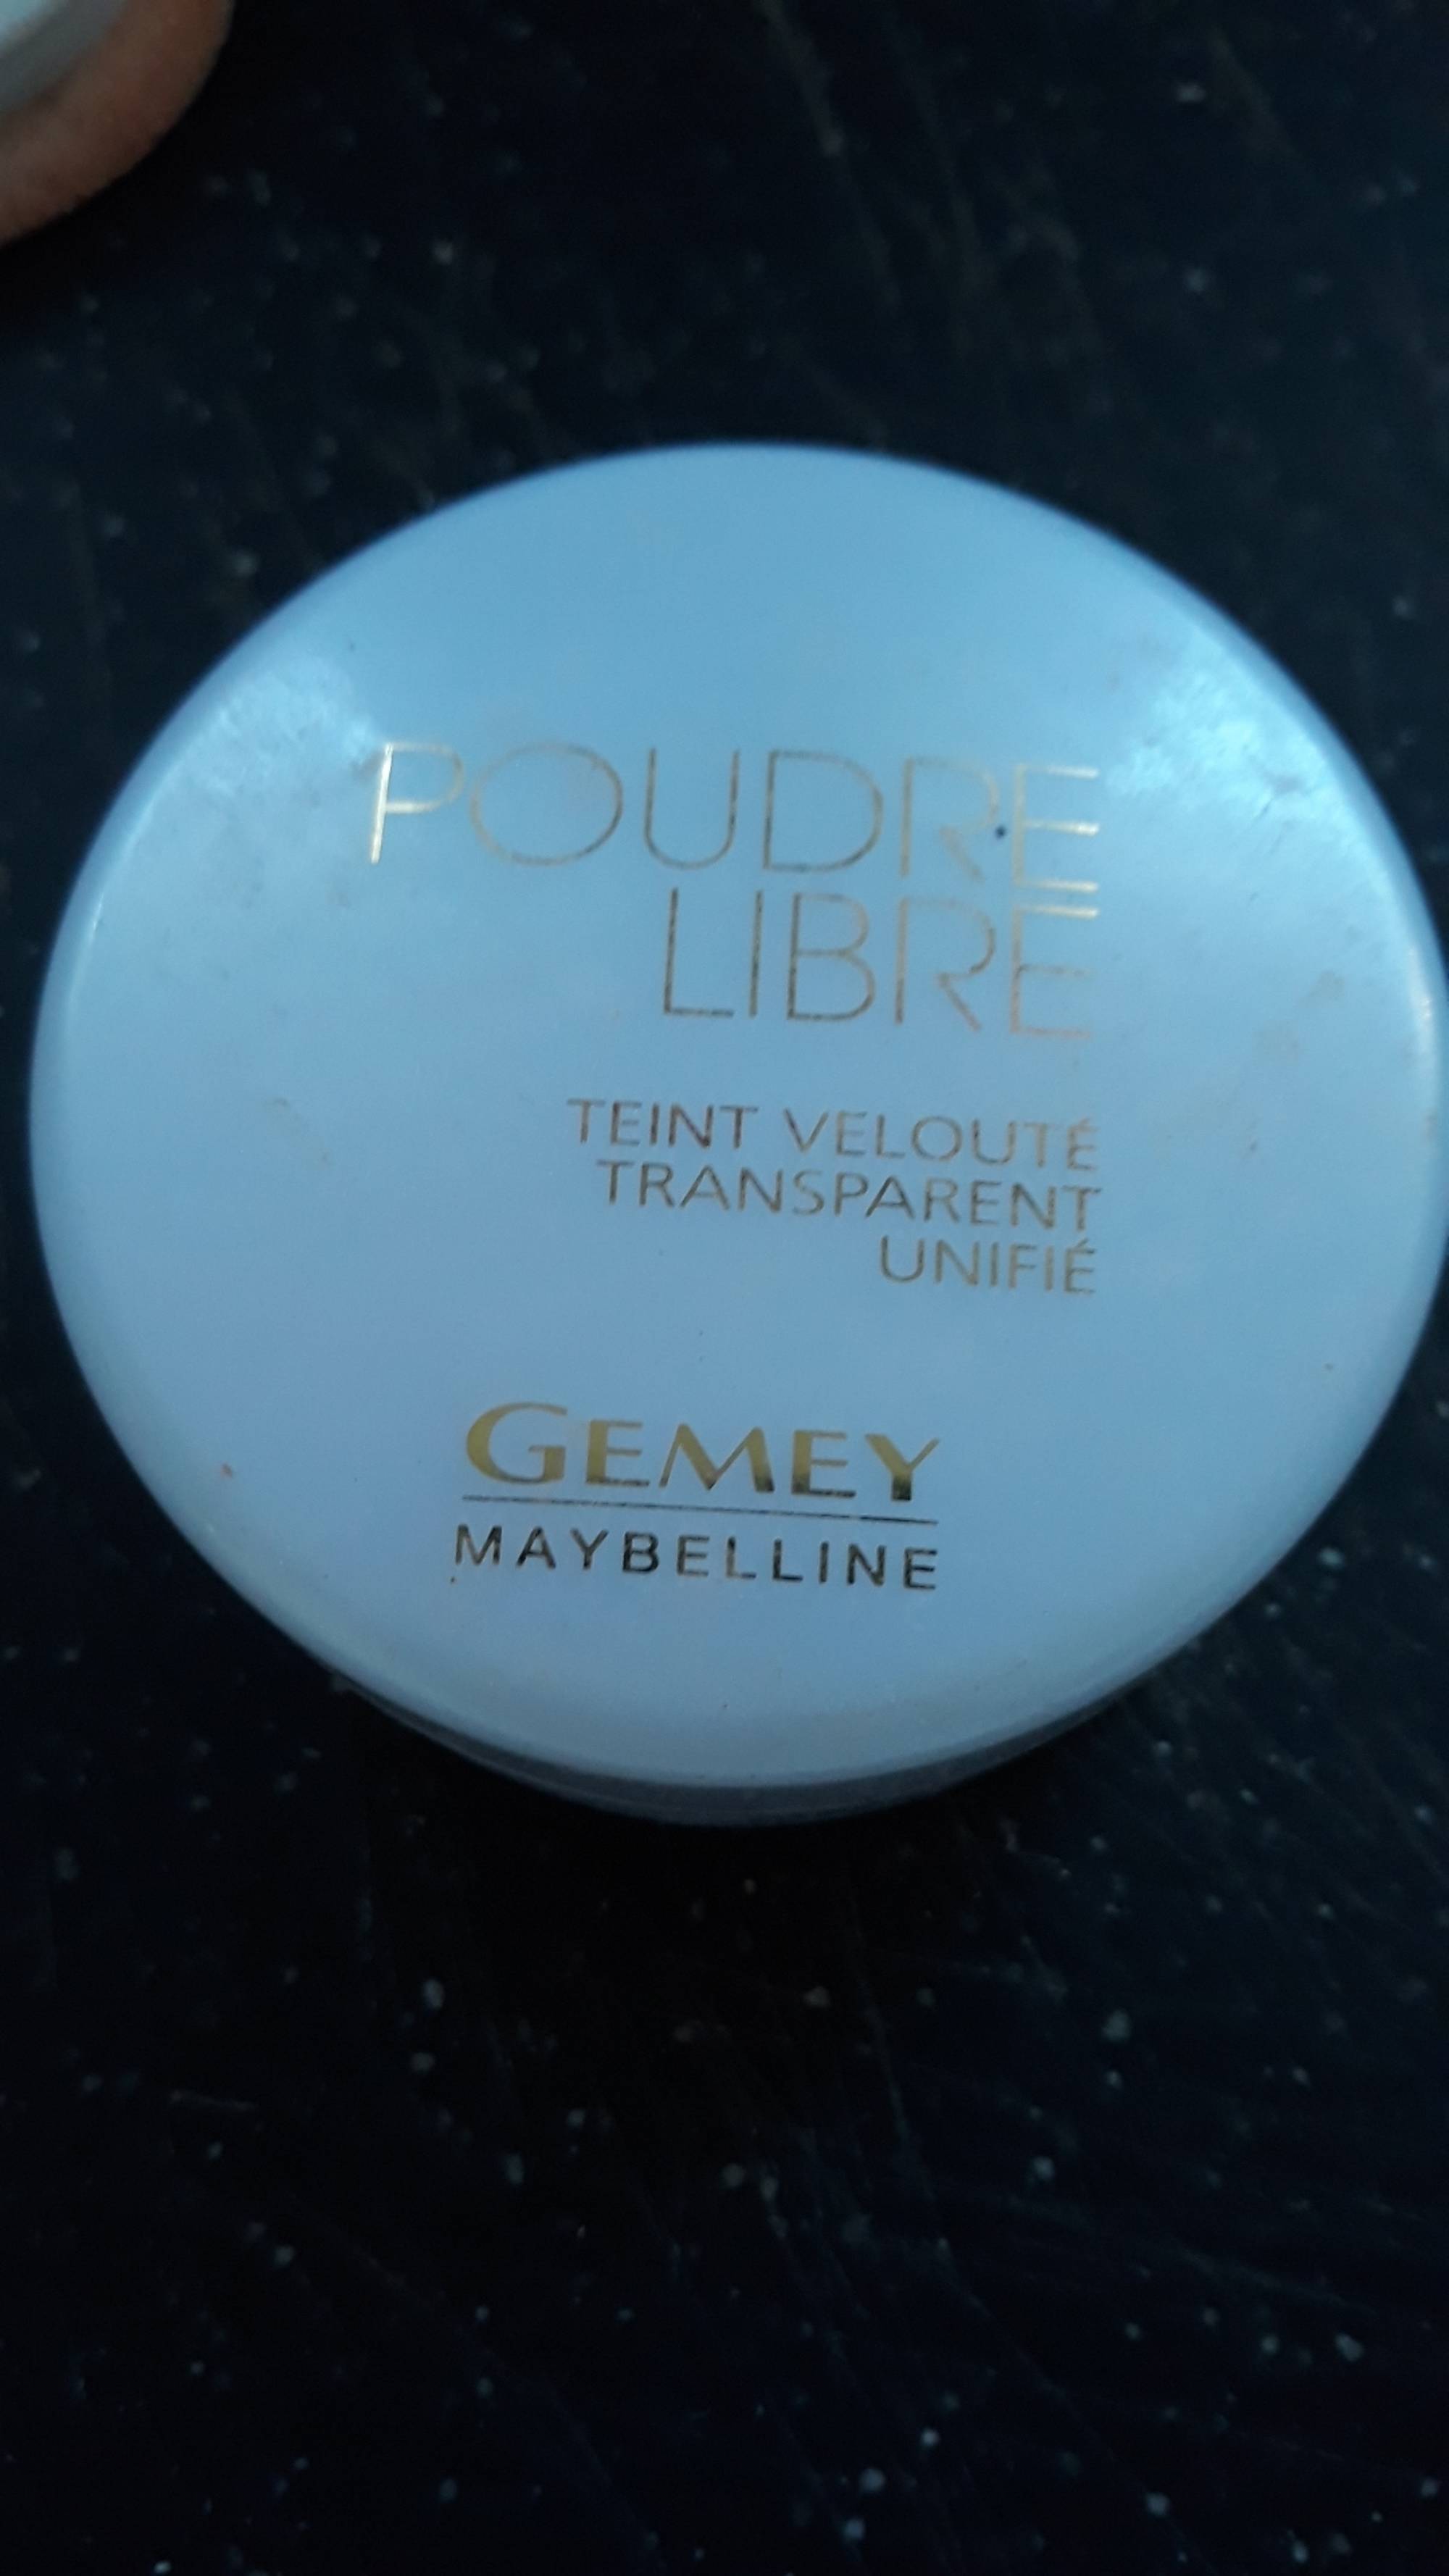 GEMEY MAYBELLINE - Poudre libre - Teint velouté transparent unifié - 01 Naturelle